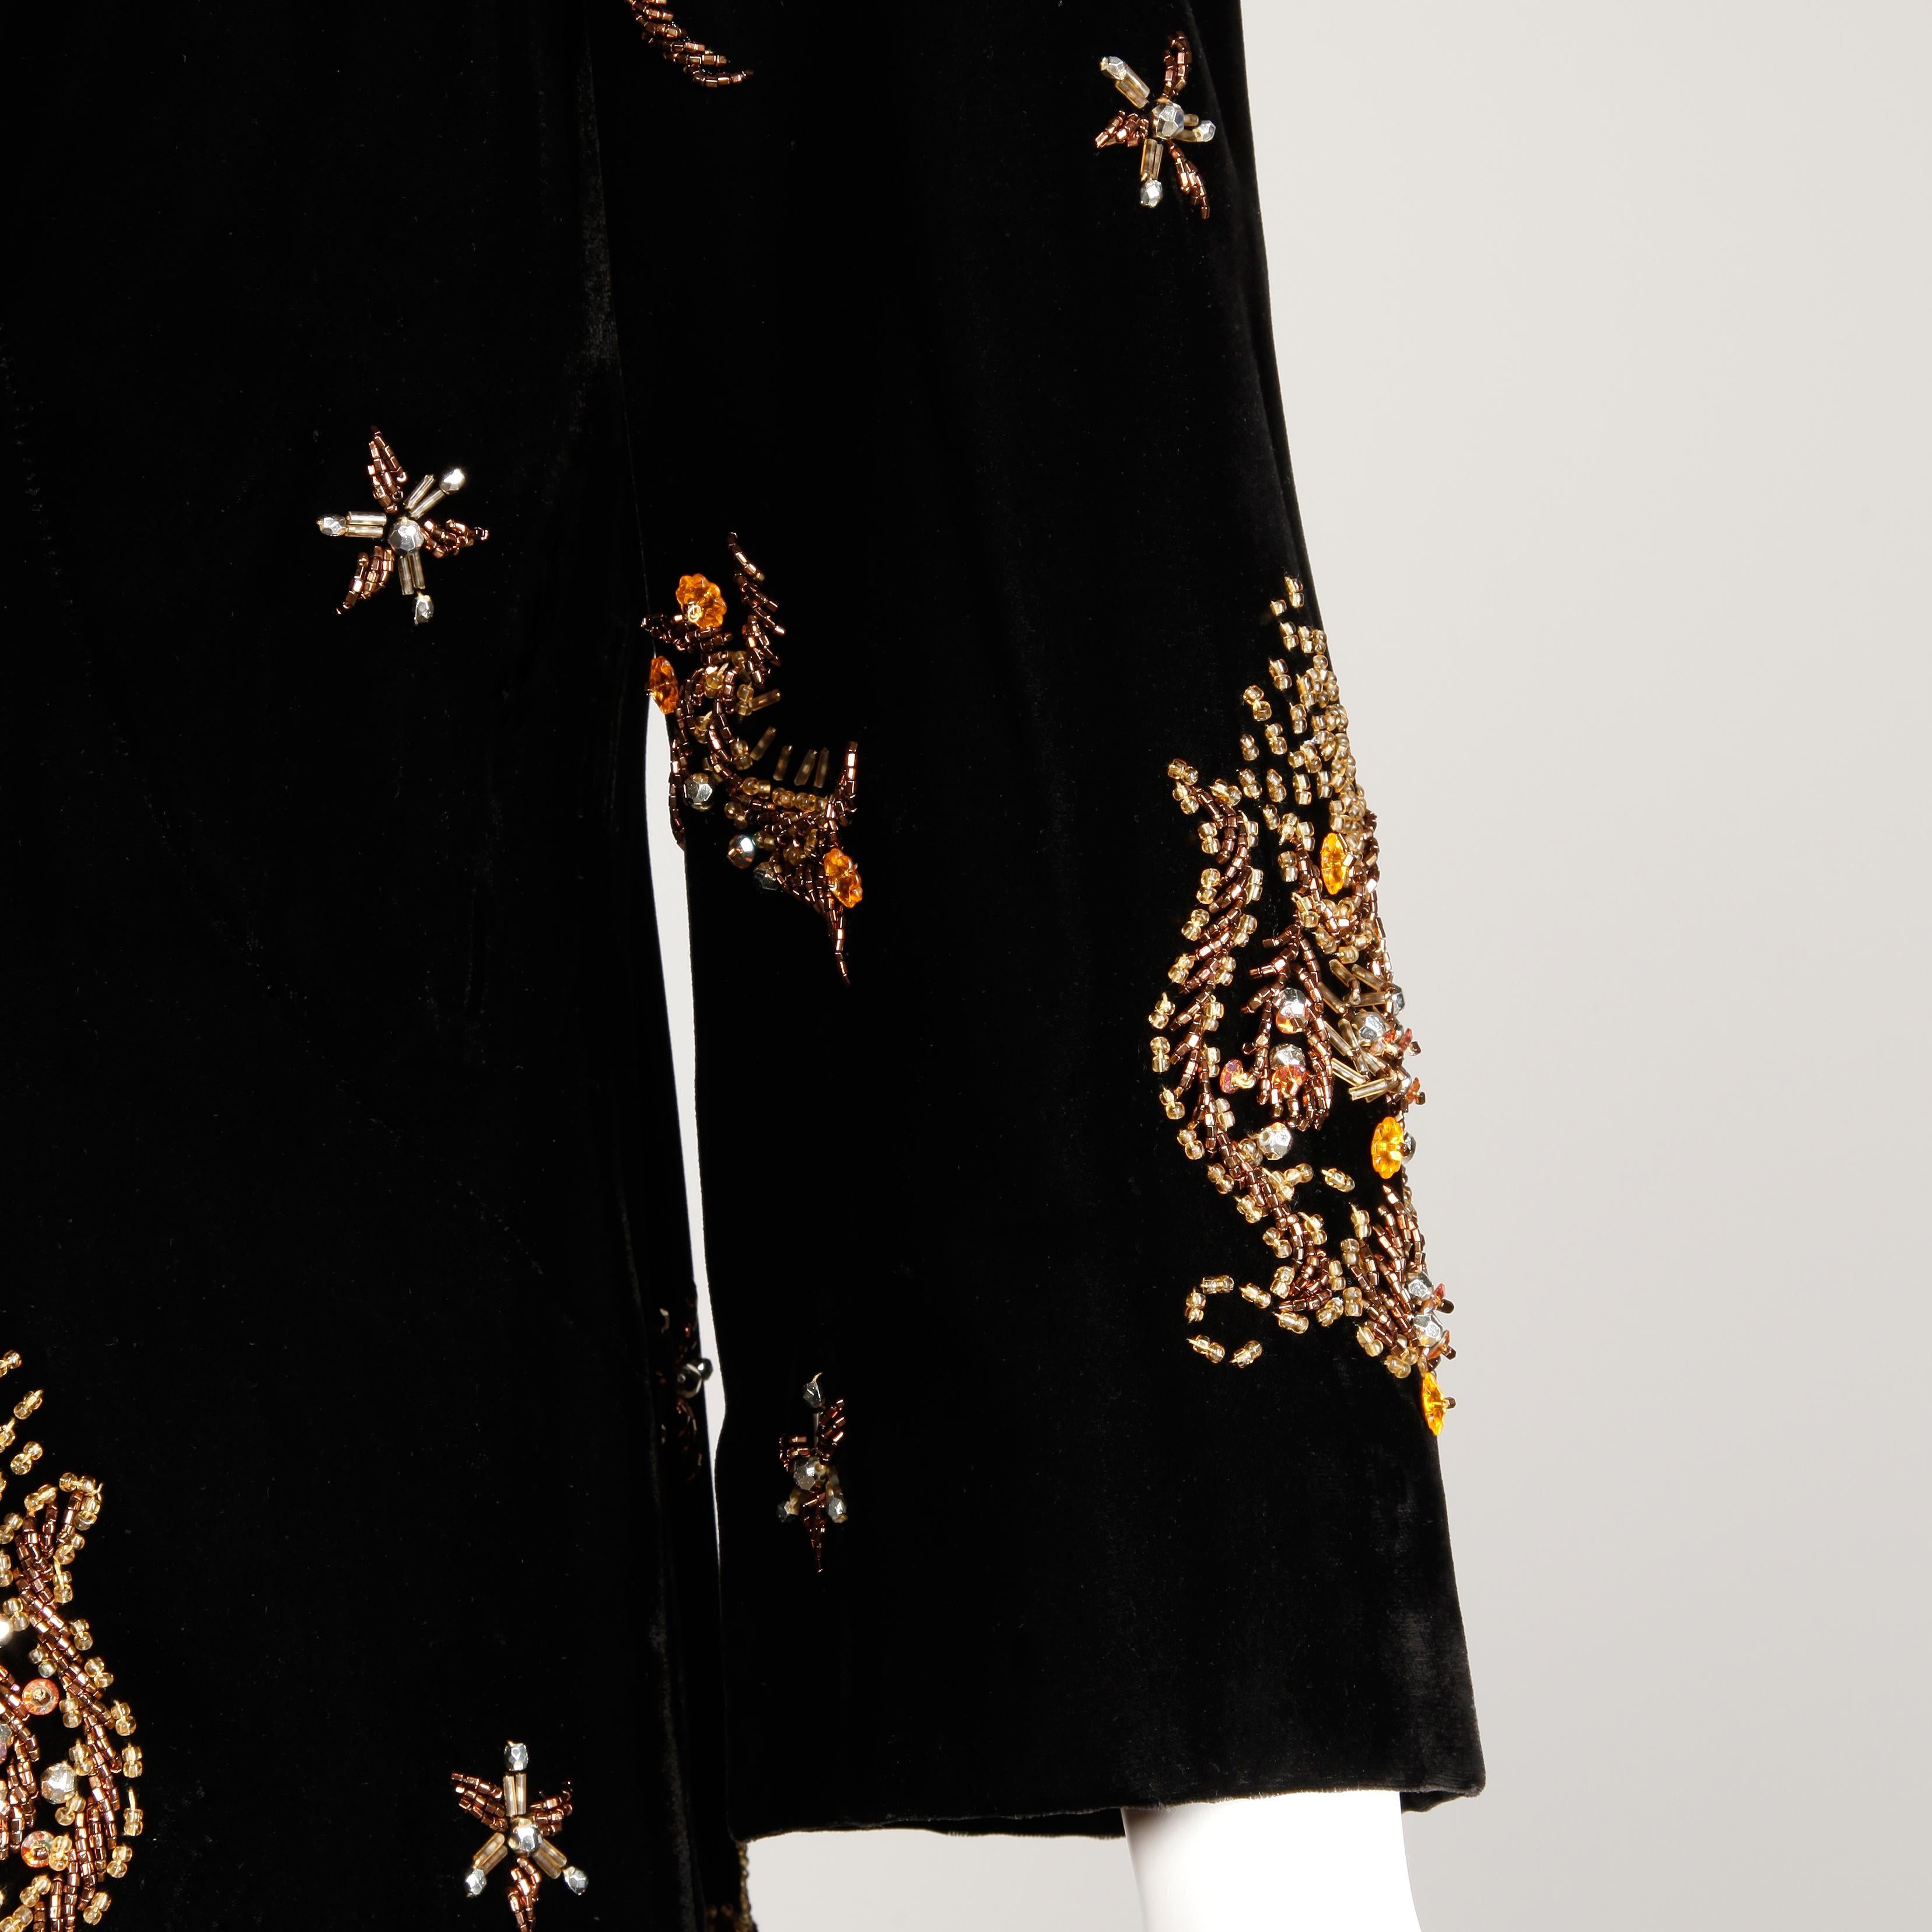 Women's 1960s Vintage Black Velvet Evening Gown Dress with Metallic Beaded Embellishment